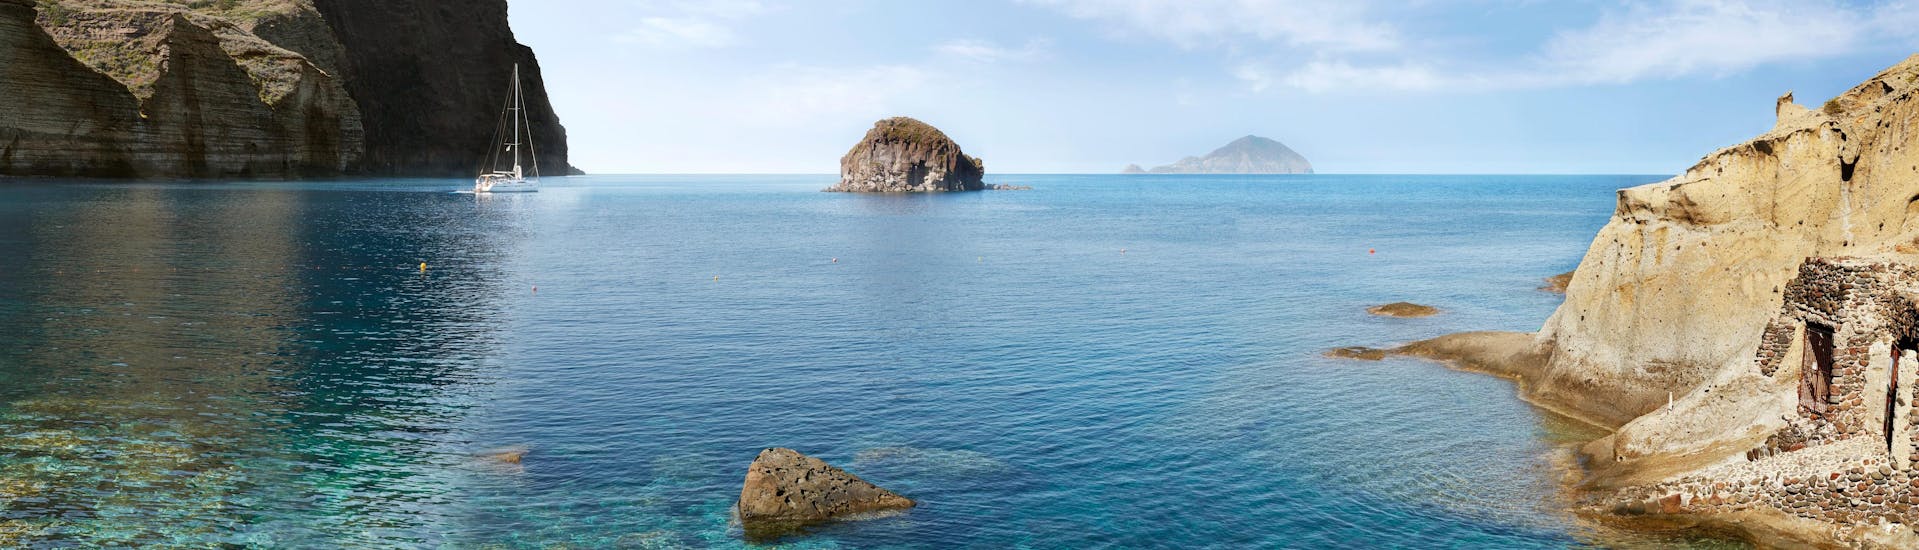 Blick auf den wunderschönen Strand von Pollara, den Sie während einer Bootstour zur Insel Salina besuchen können.